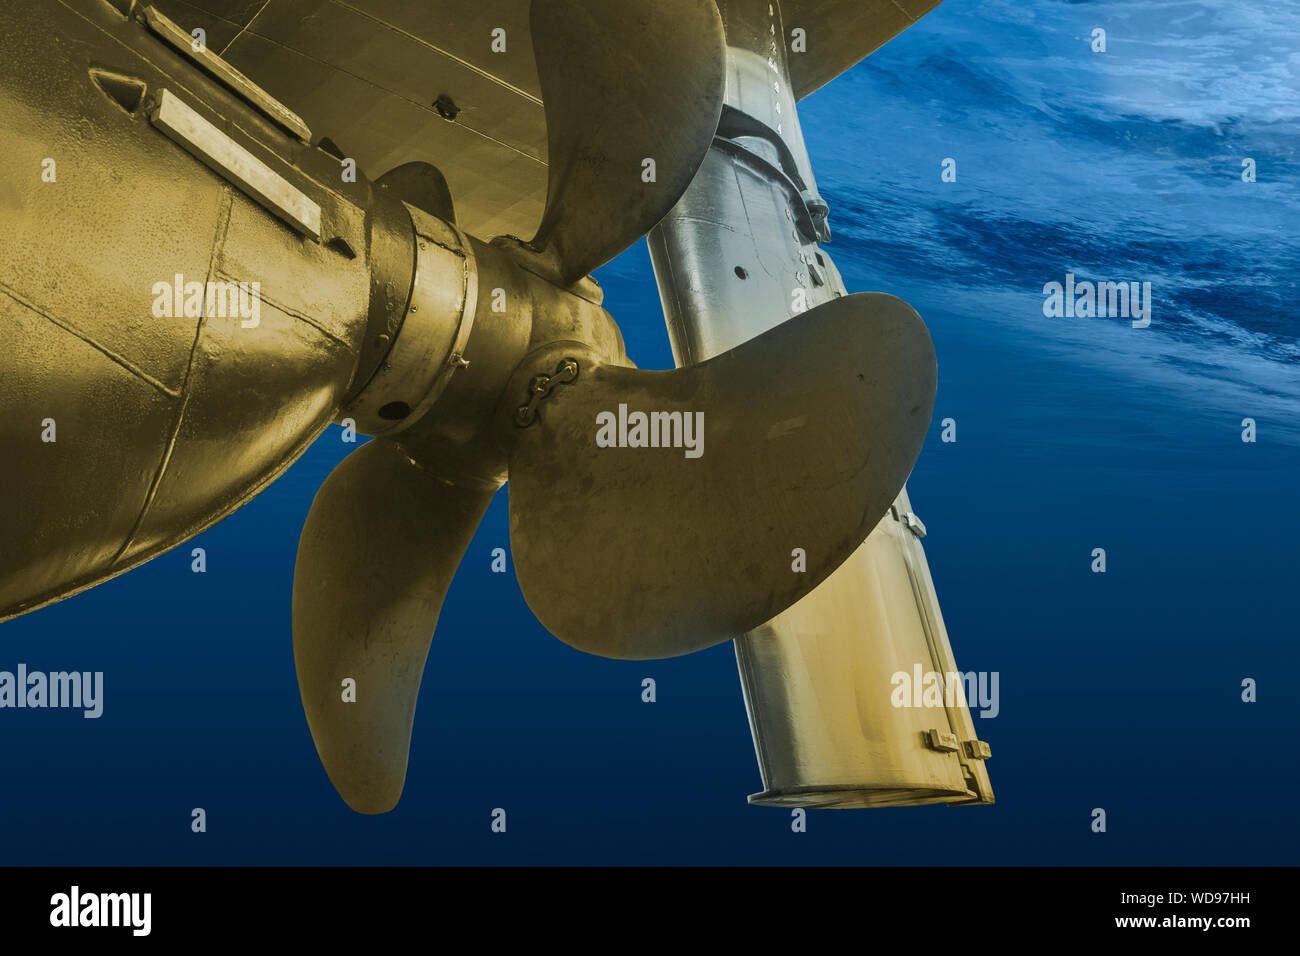 Golden elica ed il timone della grande nave in corso vista dal subacqueo. Close up dettaglio di immagine della nave. Industria dei Trasporti. Il trasporto merci. Foto Stock